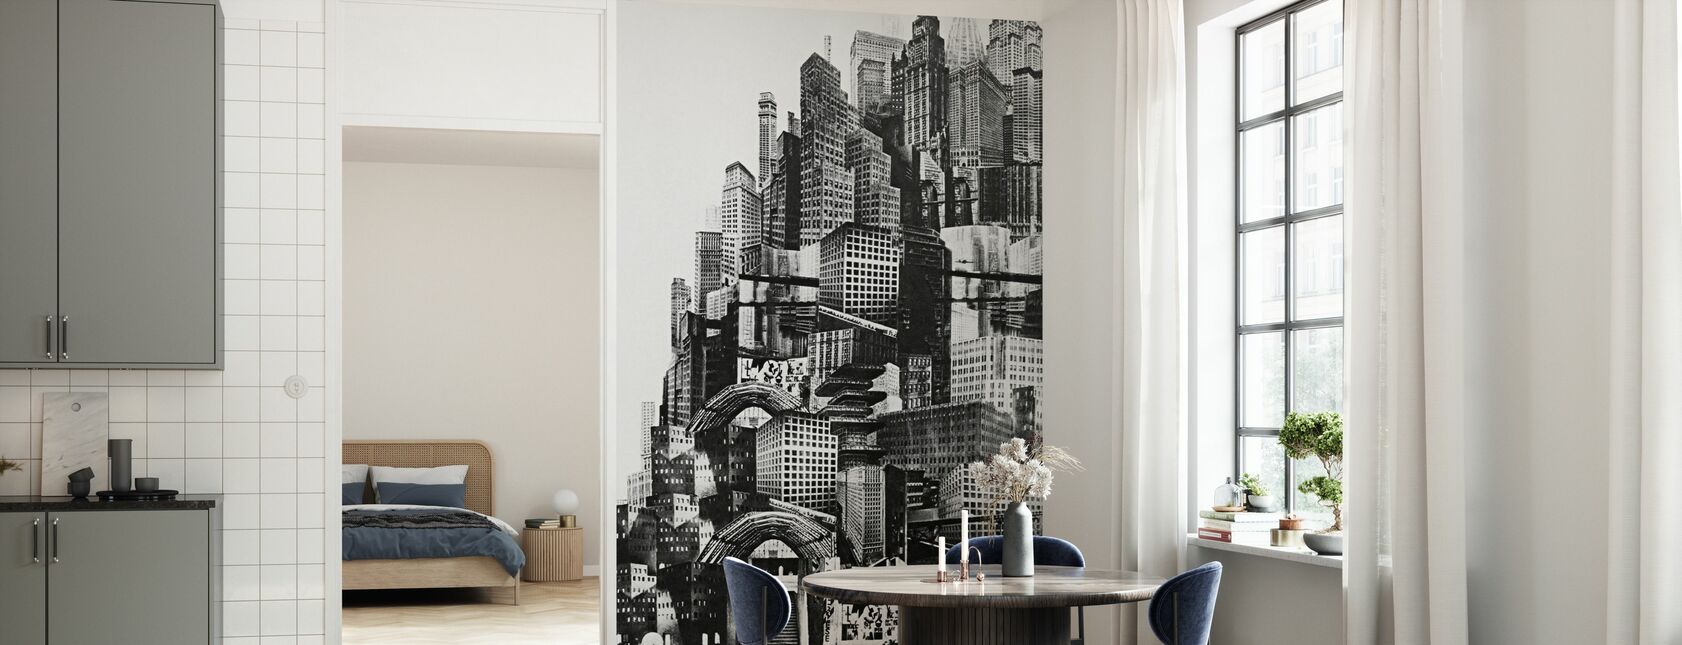 Metropolis - Wallpaper - Kitchen